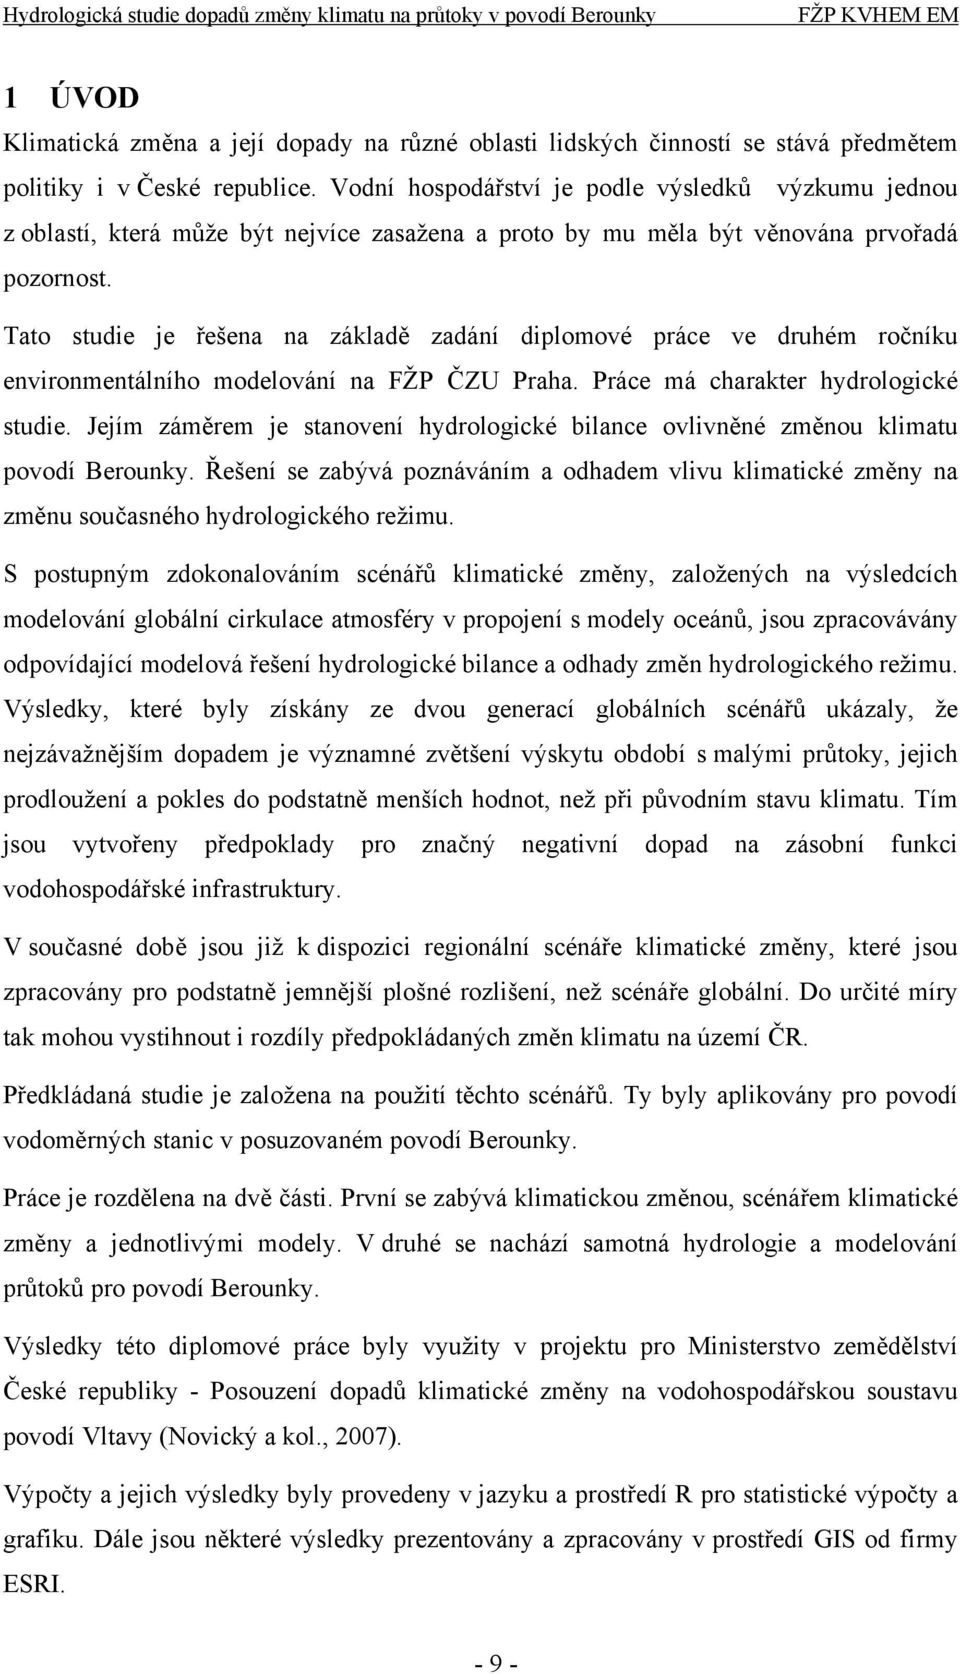 Tato studie je řešena na základě zadání diplomové práce ve druhém ročníku environmentálního modelování na FŽP ČZU Praha. Práce má charakter hydrologické studie.